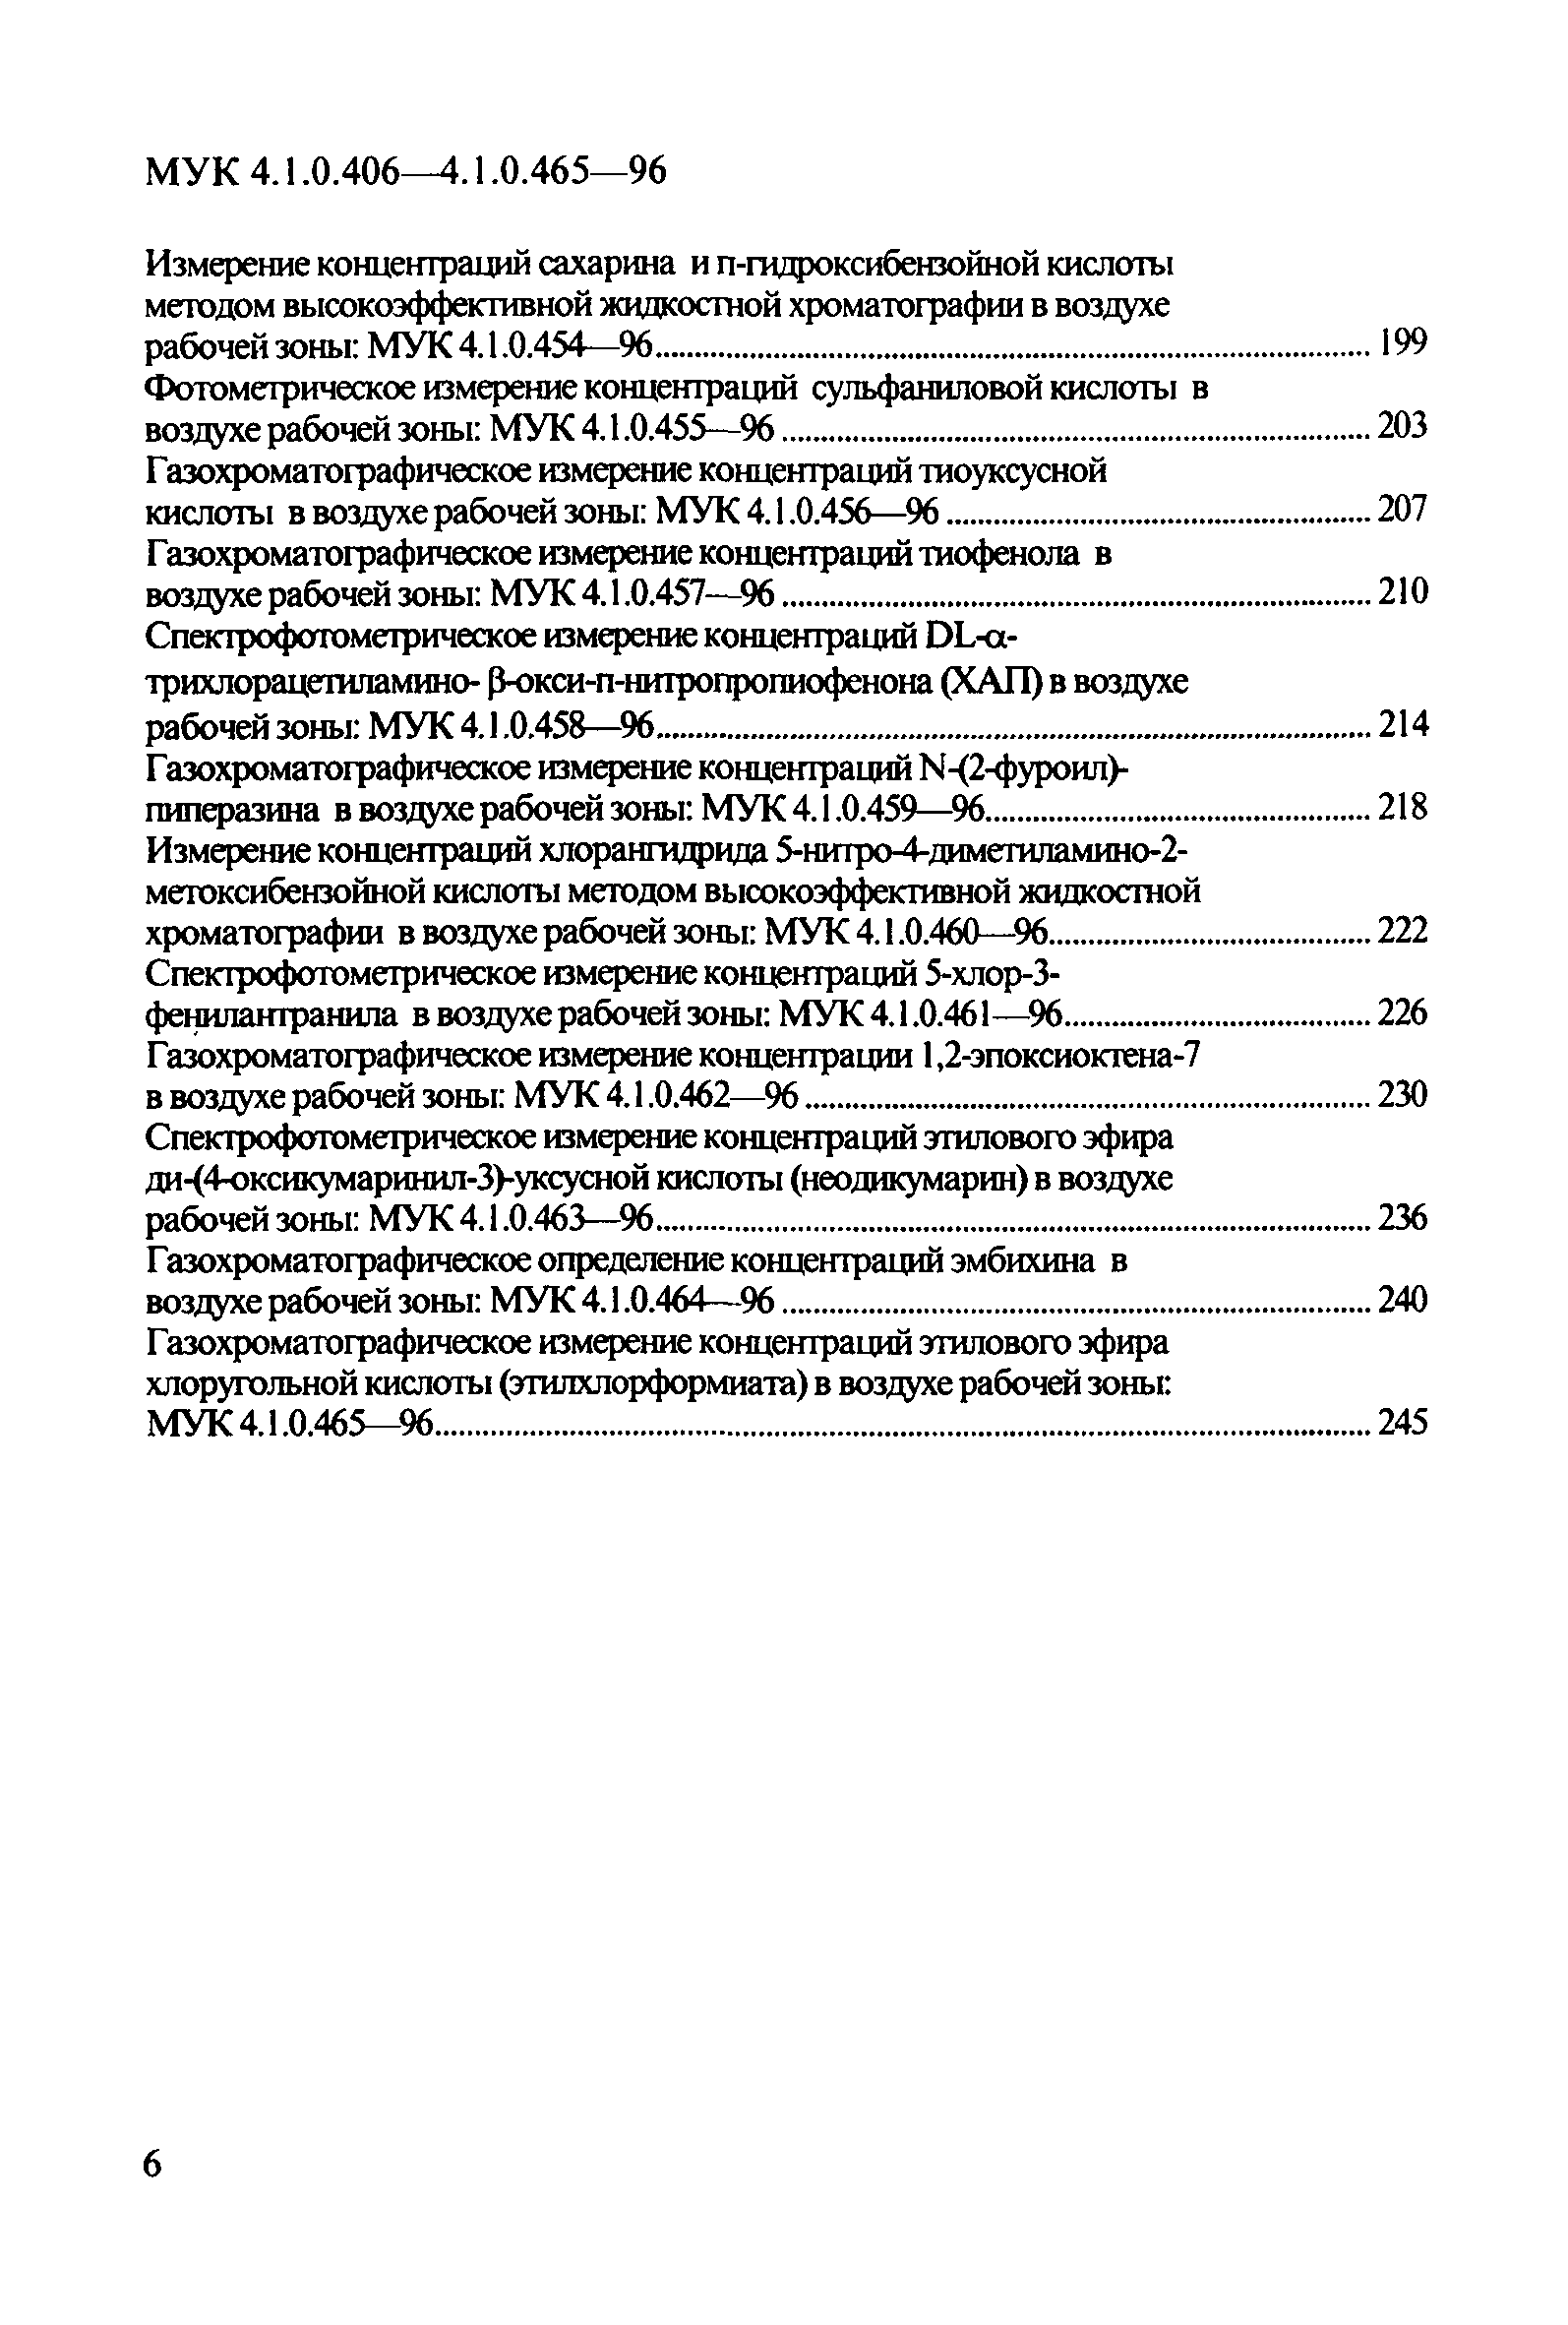 МУК 4.1.0.461-96